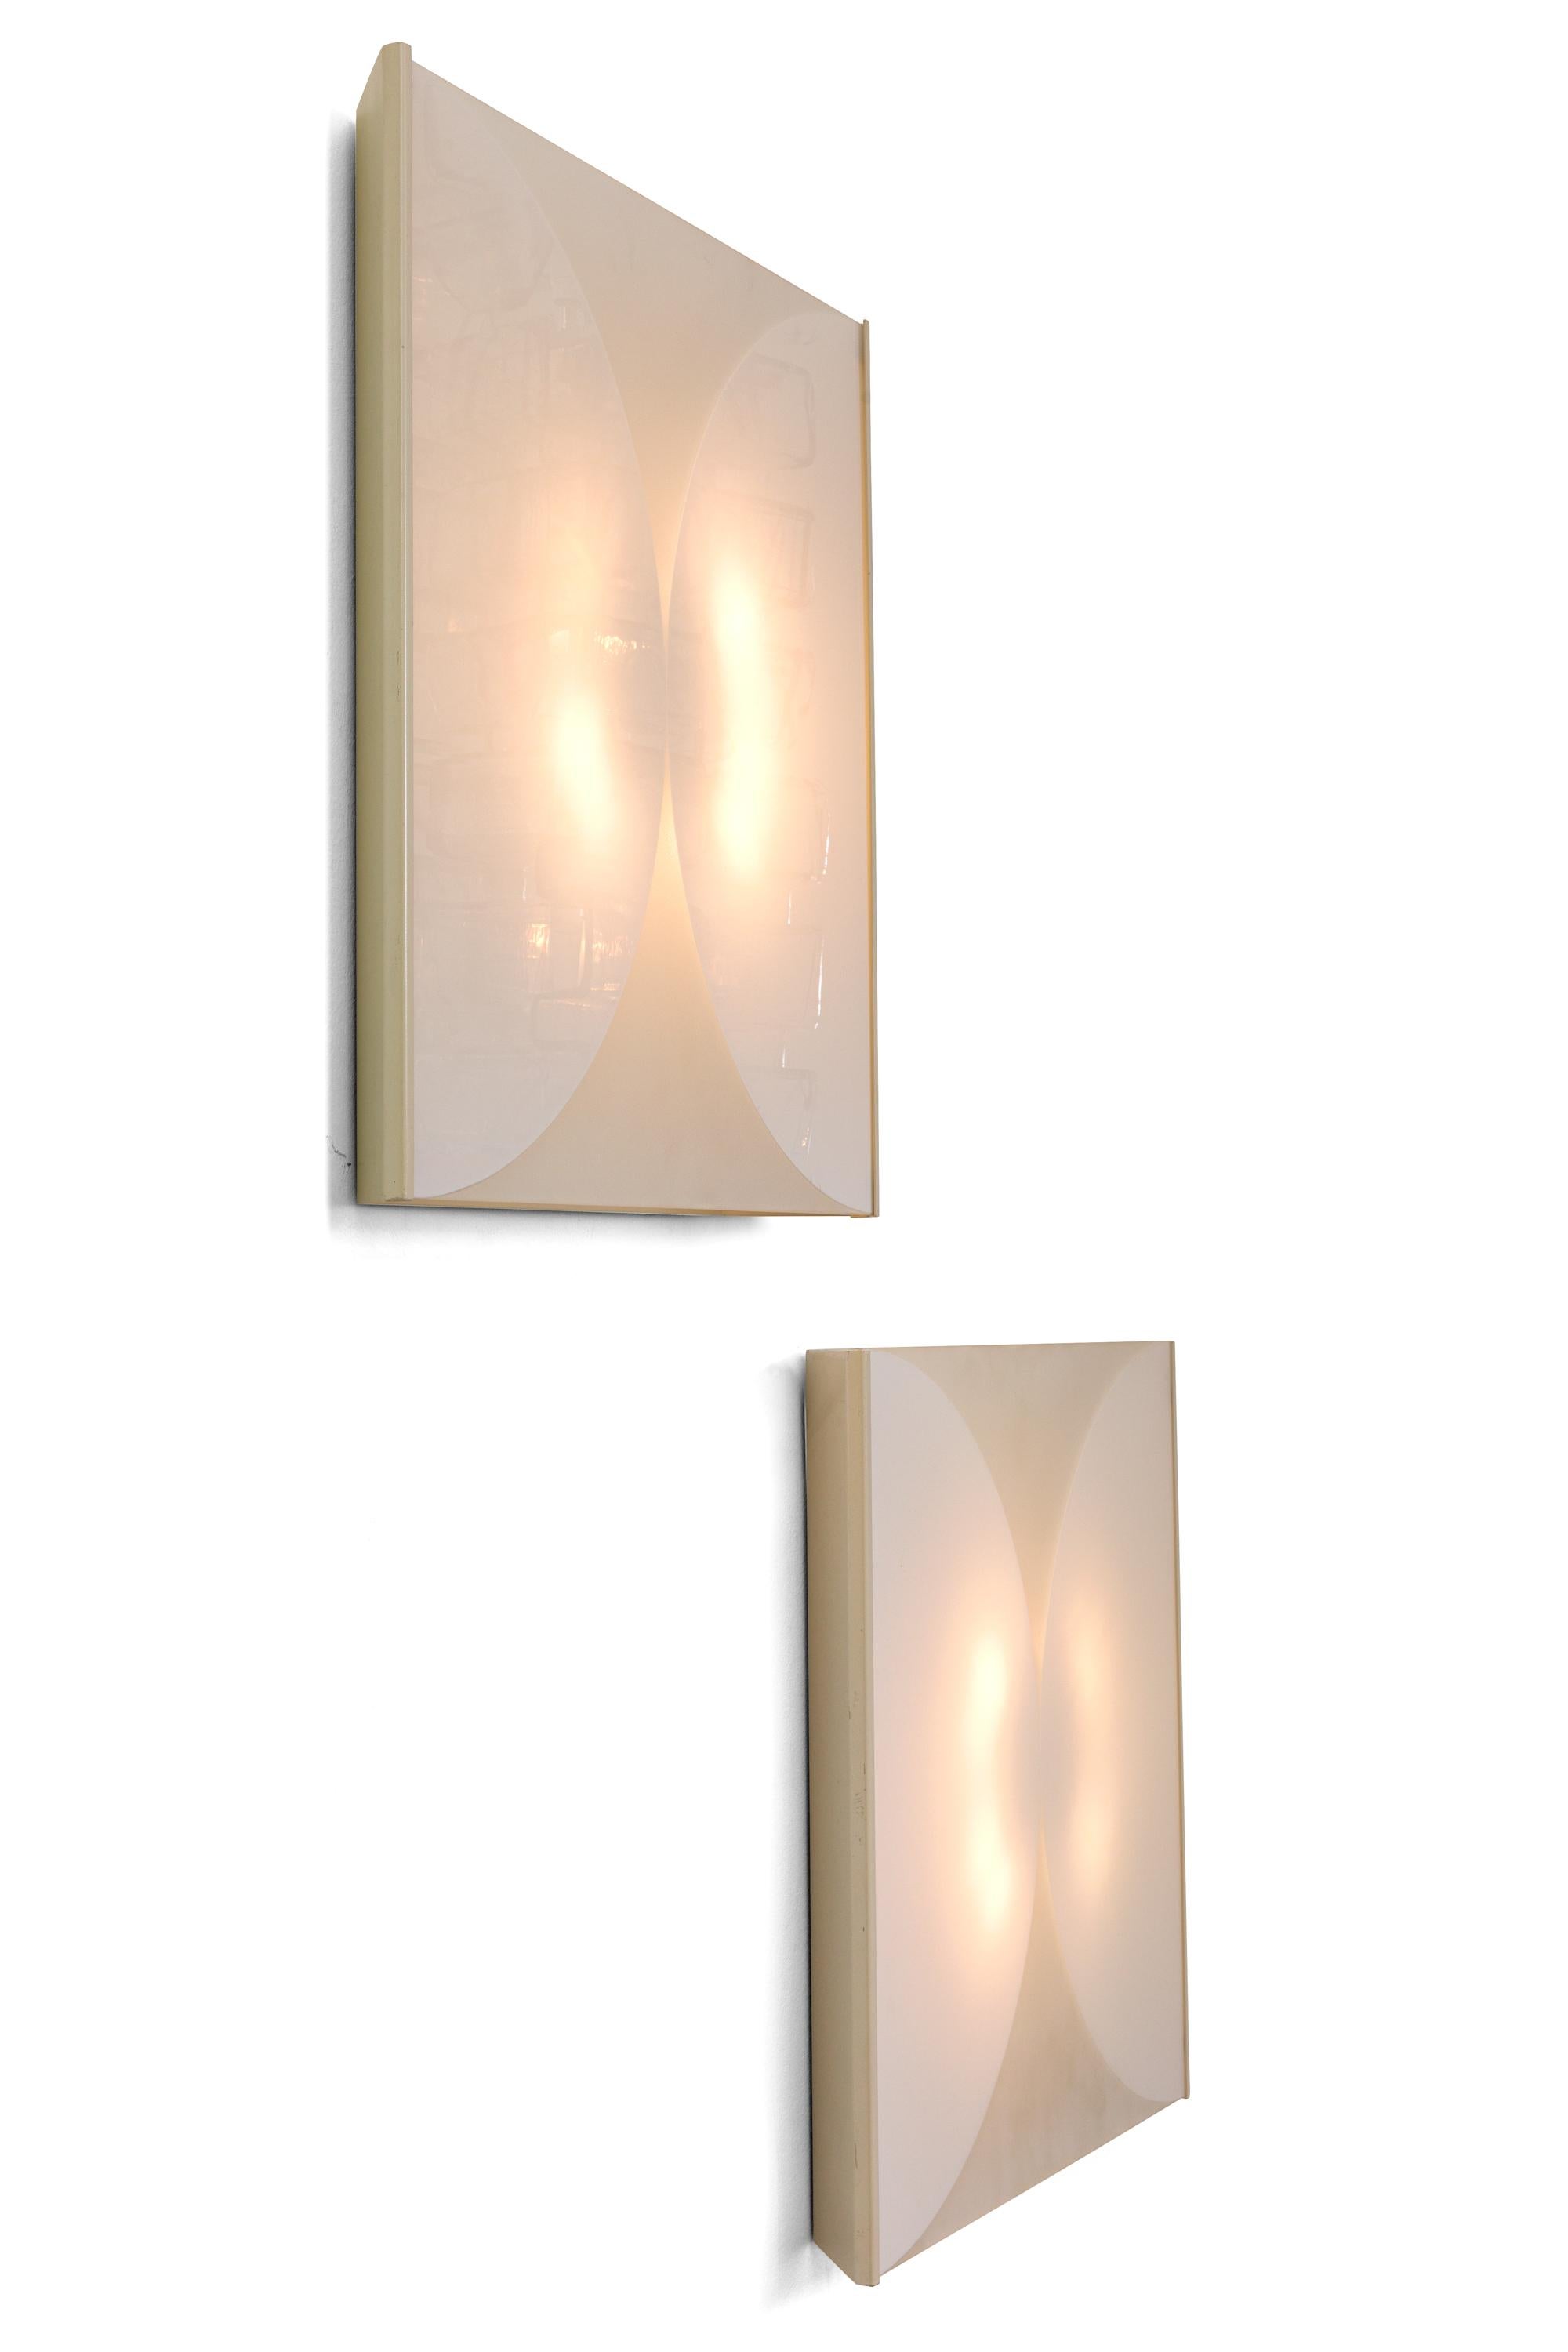 Die Leuchten bestehen aus sandgestrahlten Glasscheiben, die in einem flachen, weißen Metallrahmen untergebracht sind, um das Design zu gestalten. Erhältlich als Paar oder einzeln.